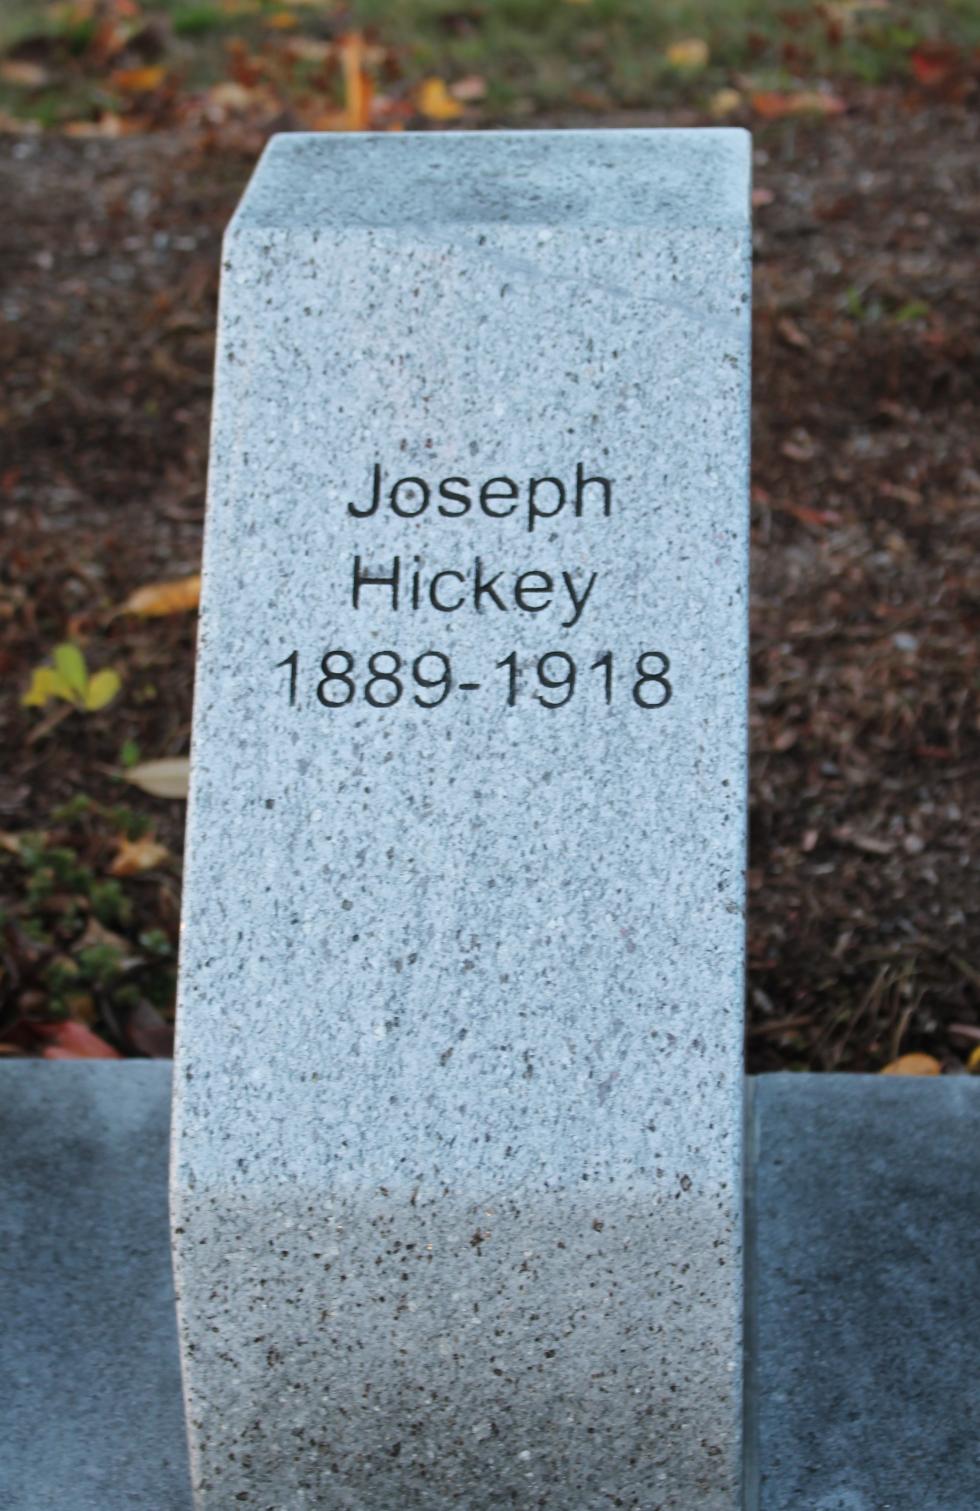 Shrewsbury Massachusetts World War I Veterans Memorial Joseph Hickey